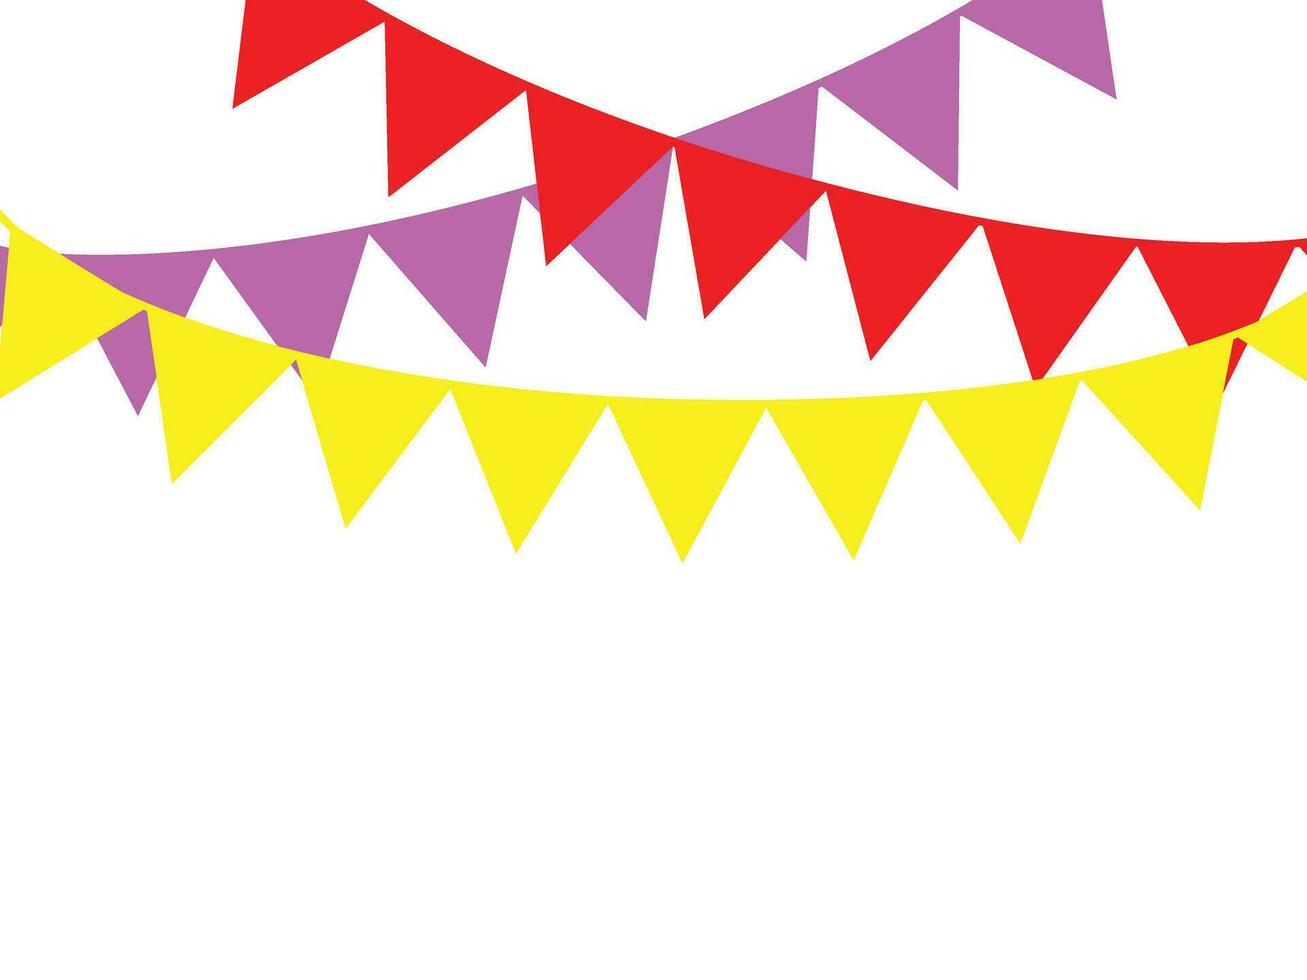 fest flagga till fira årsdag eller födelsedag dekorationer karneval vektor element